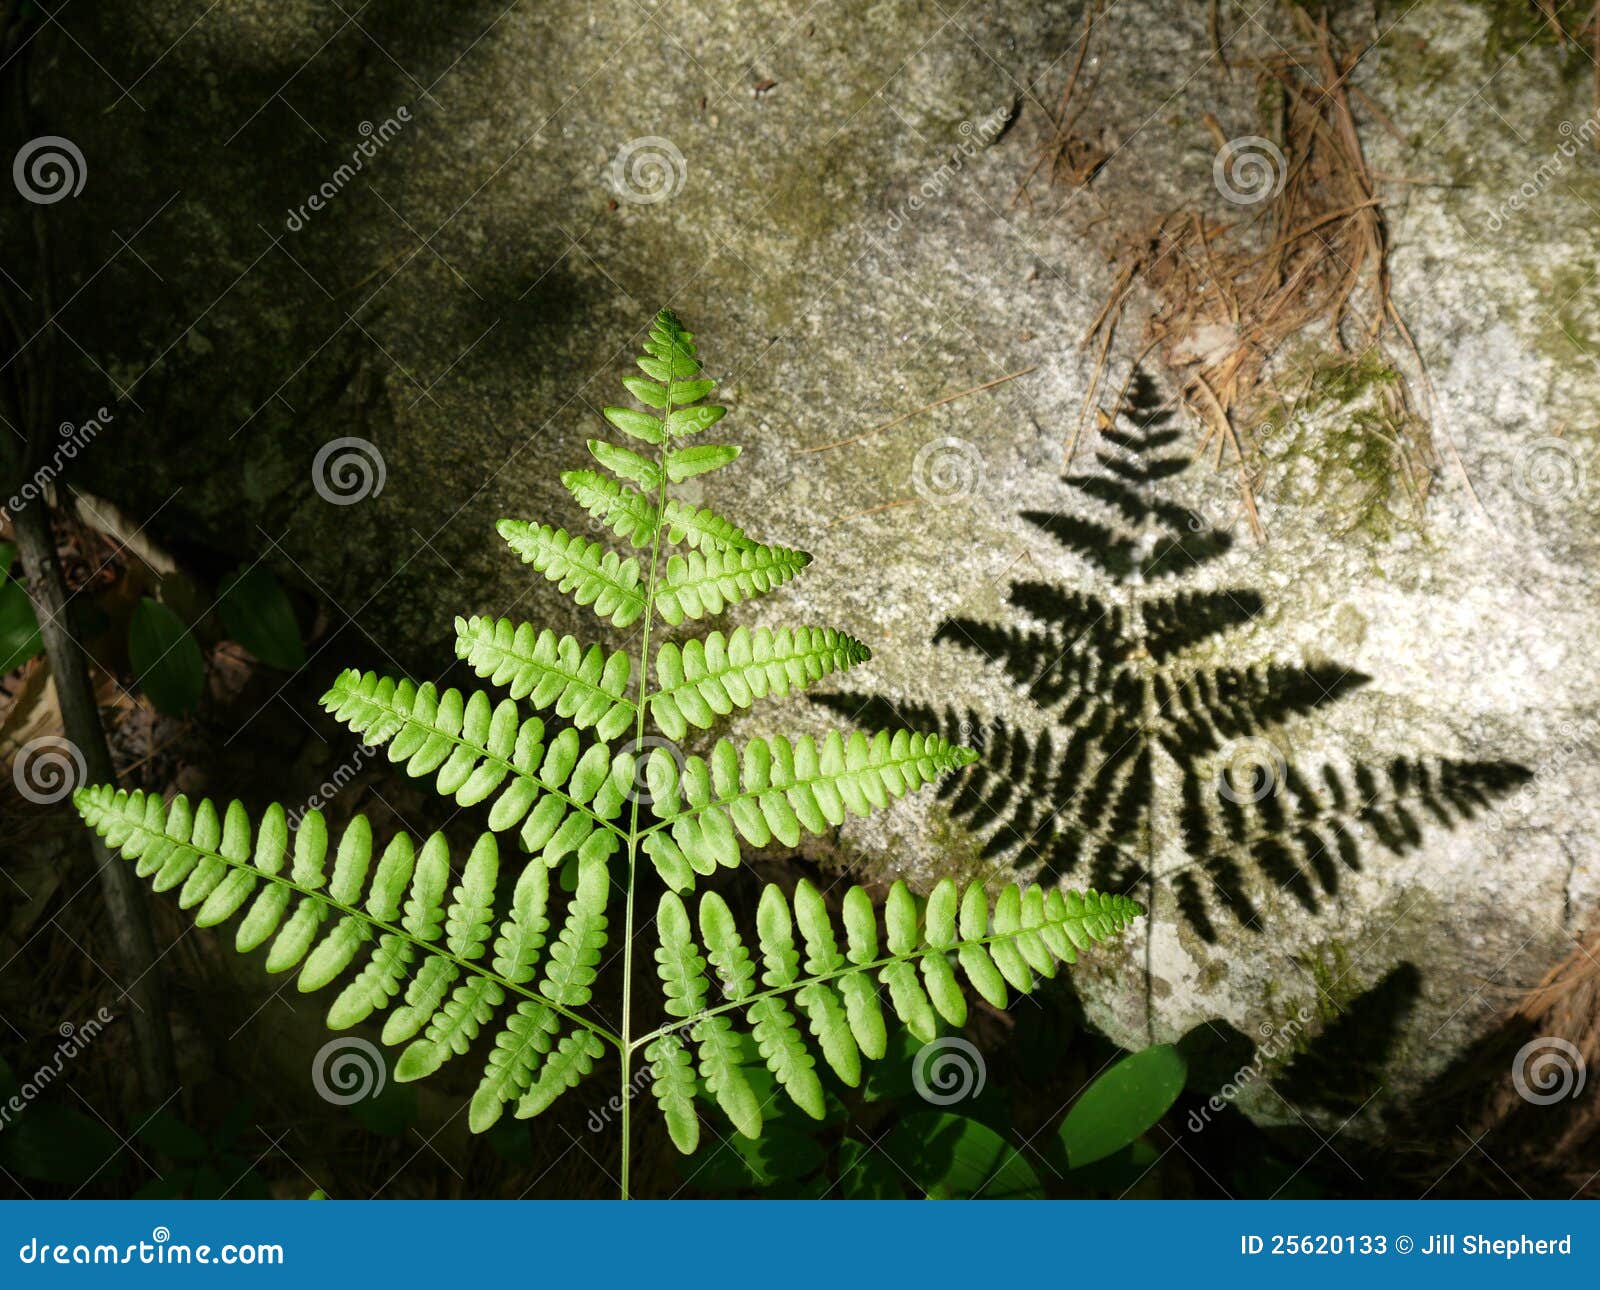 summer: sunlit fern leaf and rock